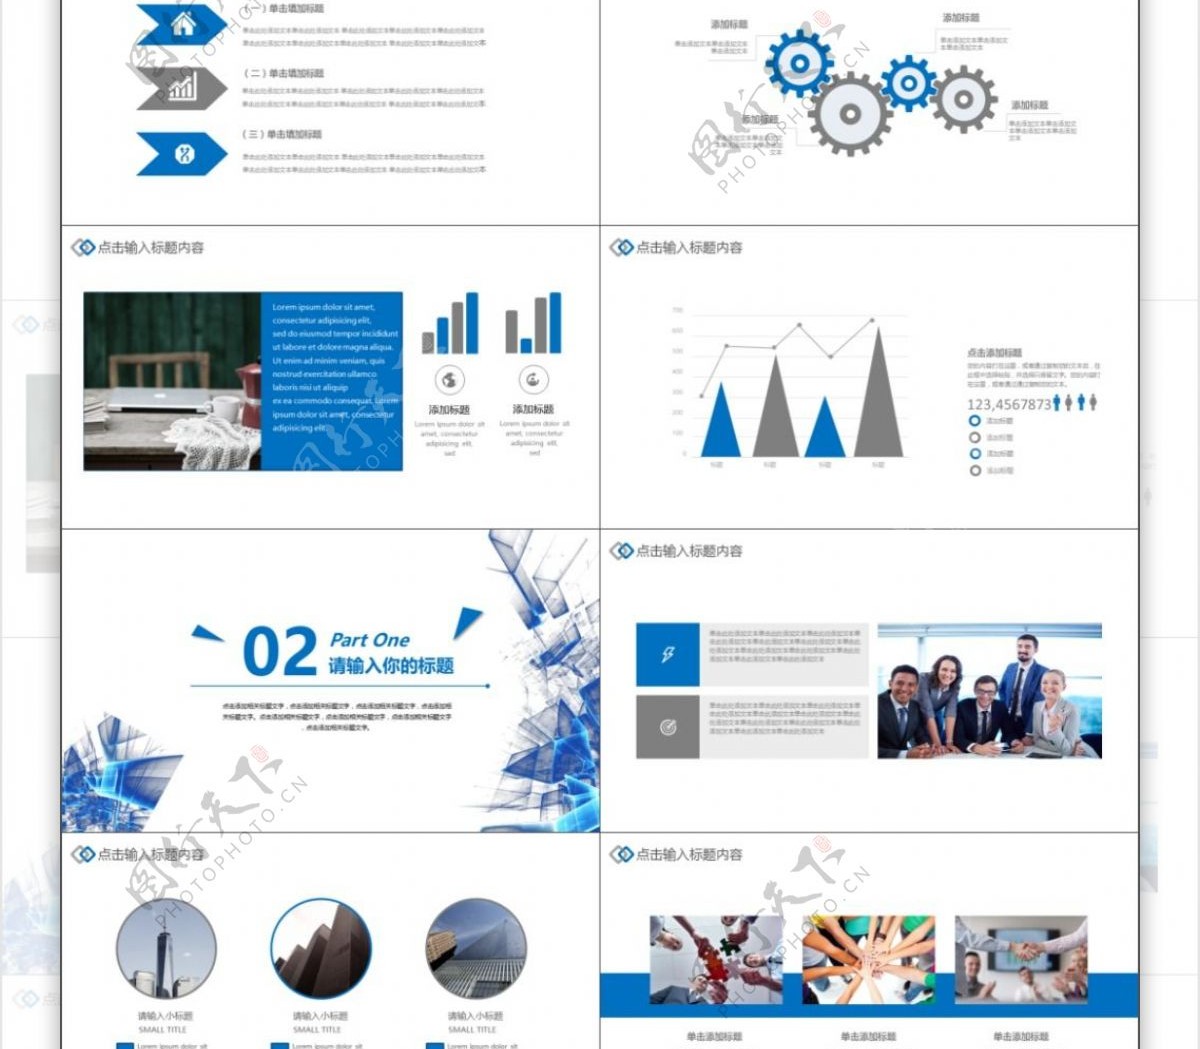 2019蓝色科技商务计划总结PPT模板